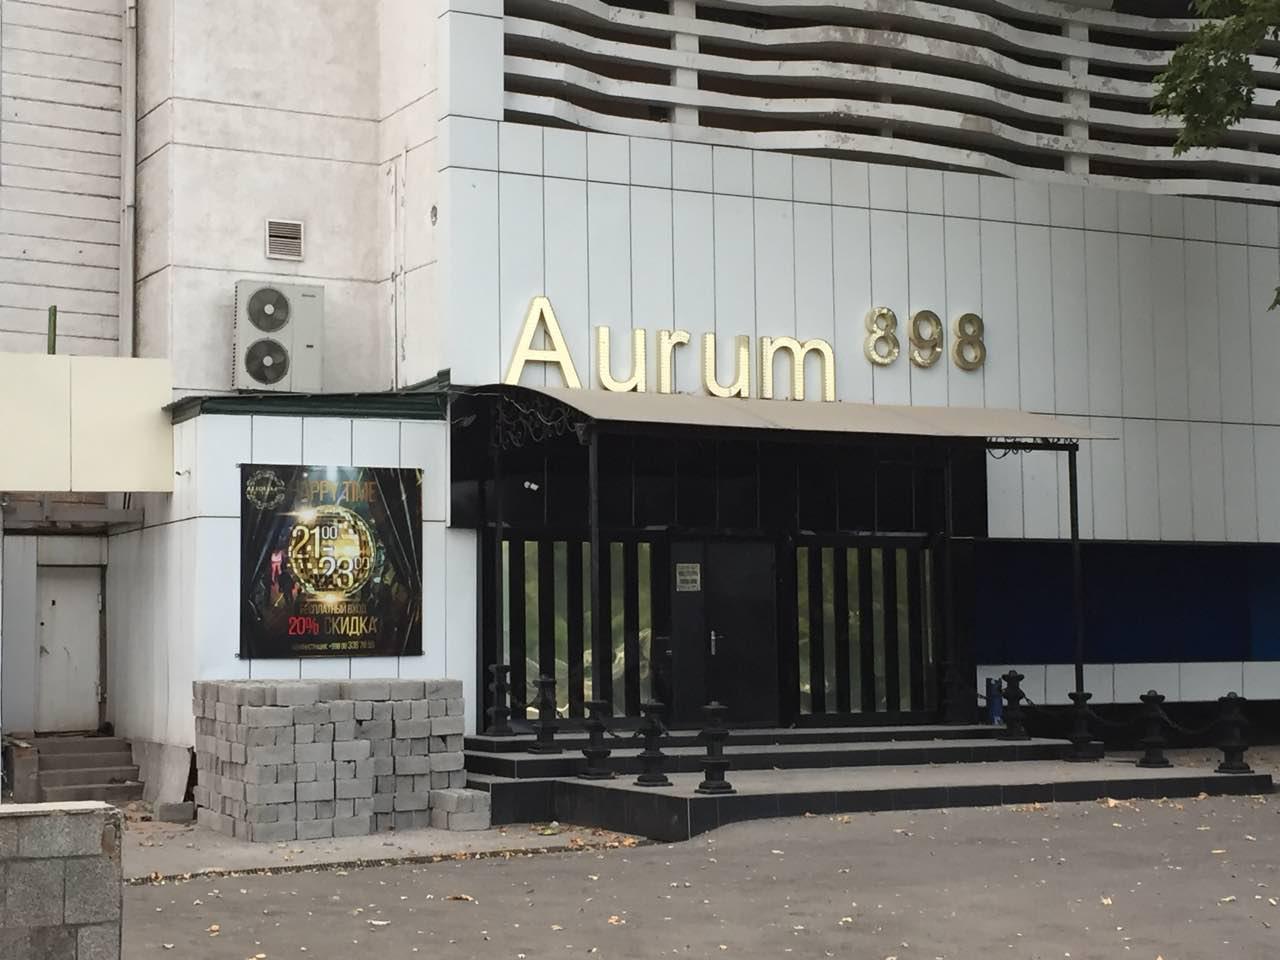 В Ташкенте закрыли ночной клуб Aurum 898, в котором убили известного спортсмена